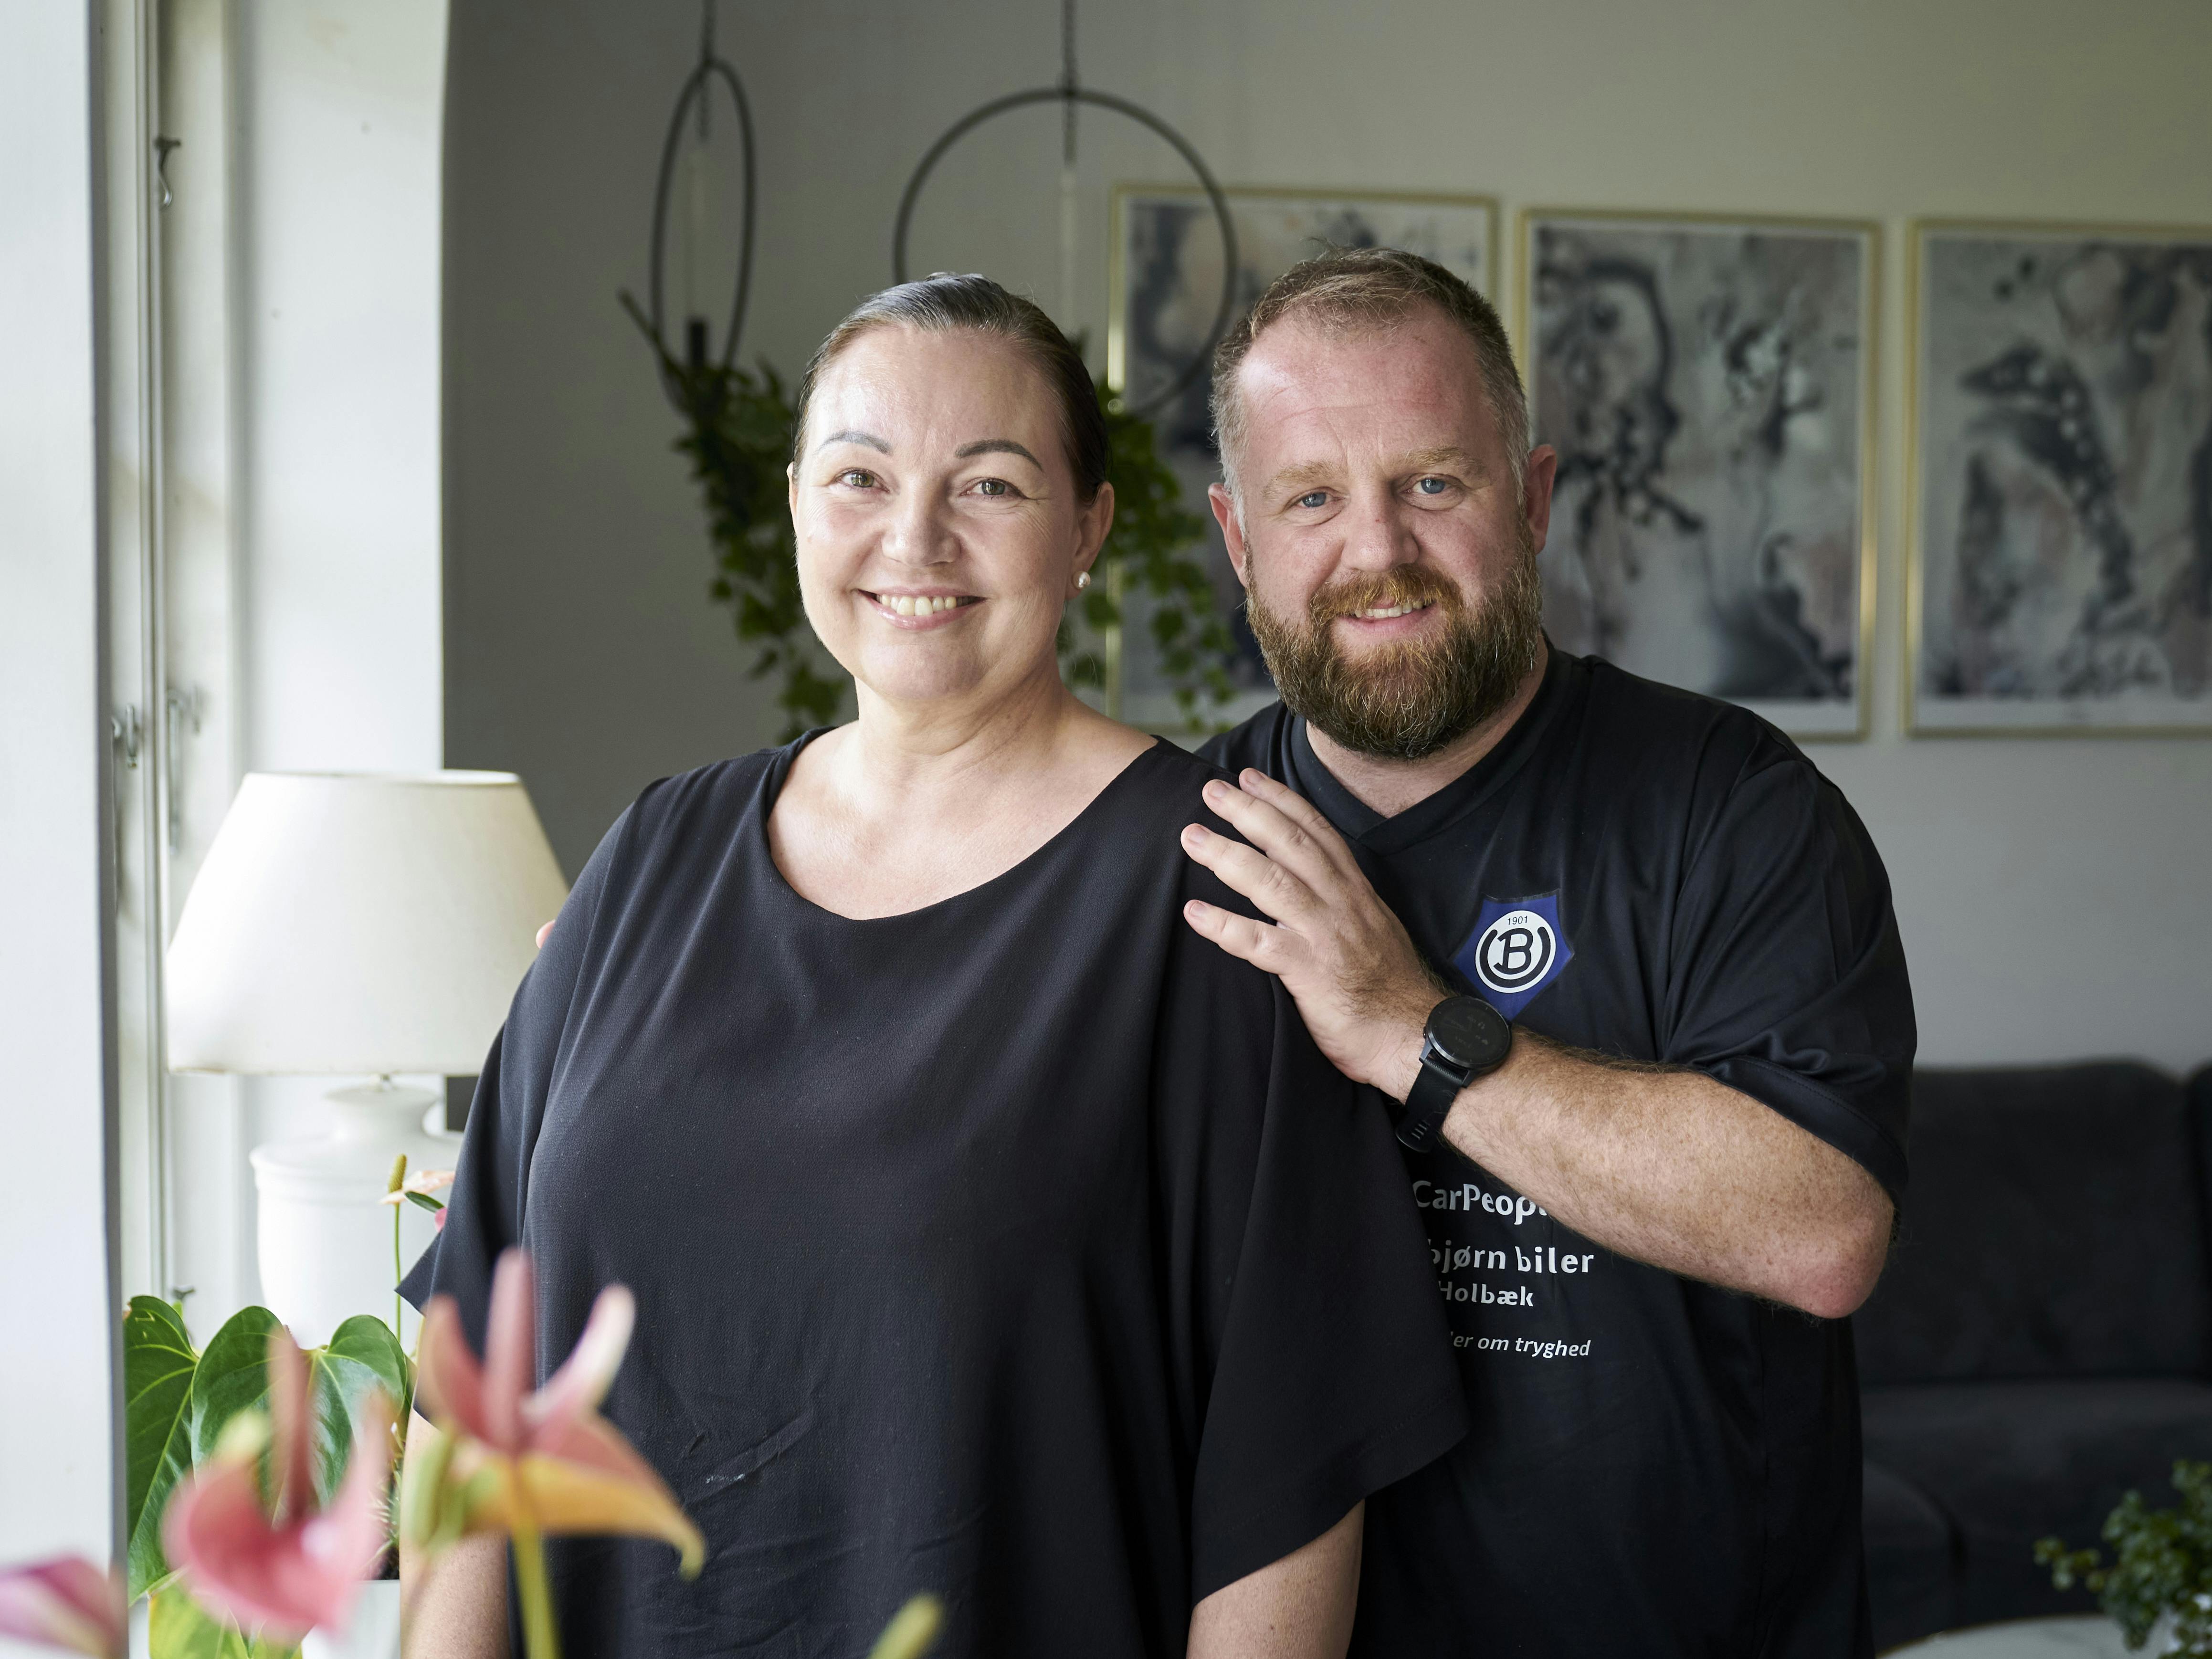 Selv om Kevin uden at vide det var udsat for smittefare i fem år, gik han fri. I dag støtter han trofast sin hustru, Kicki Hyllen Mikkelsen, i kampen for at udbrede viden om hiv.